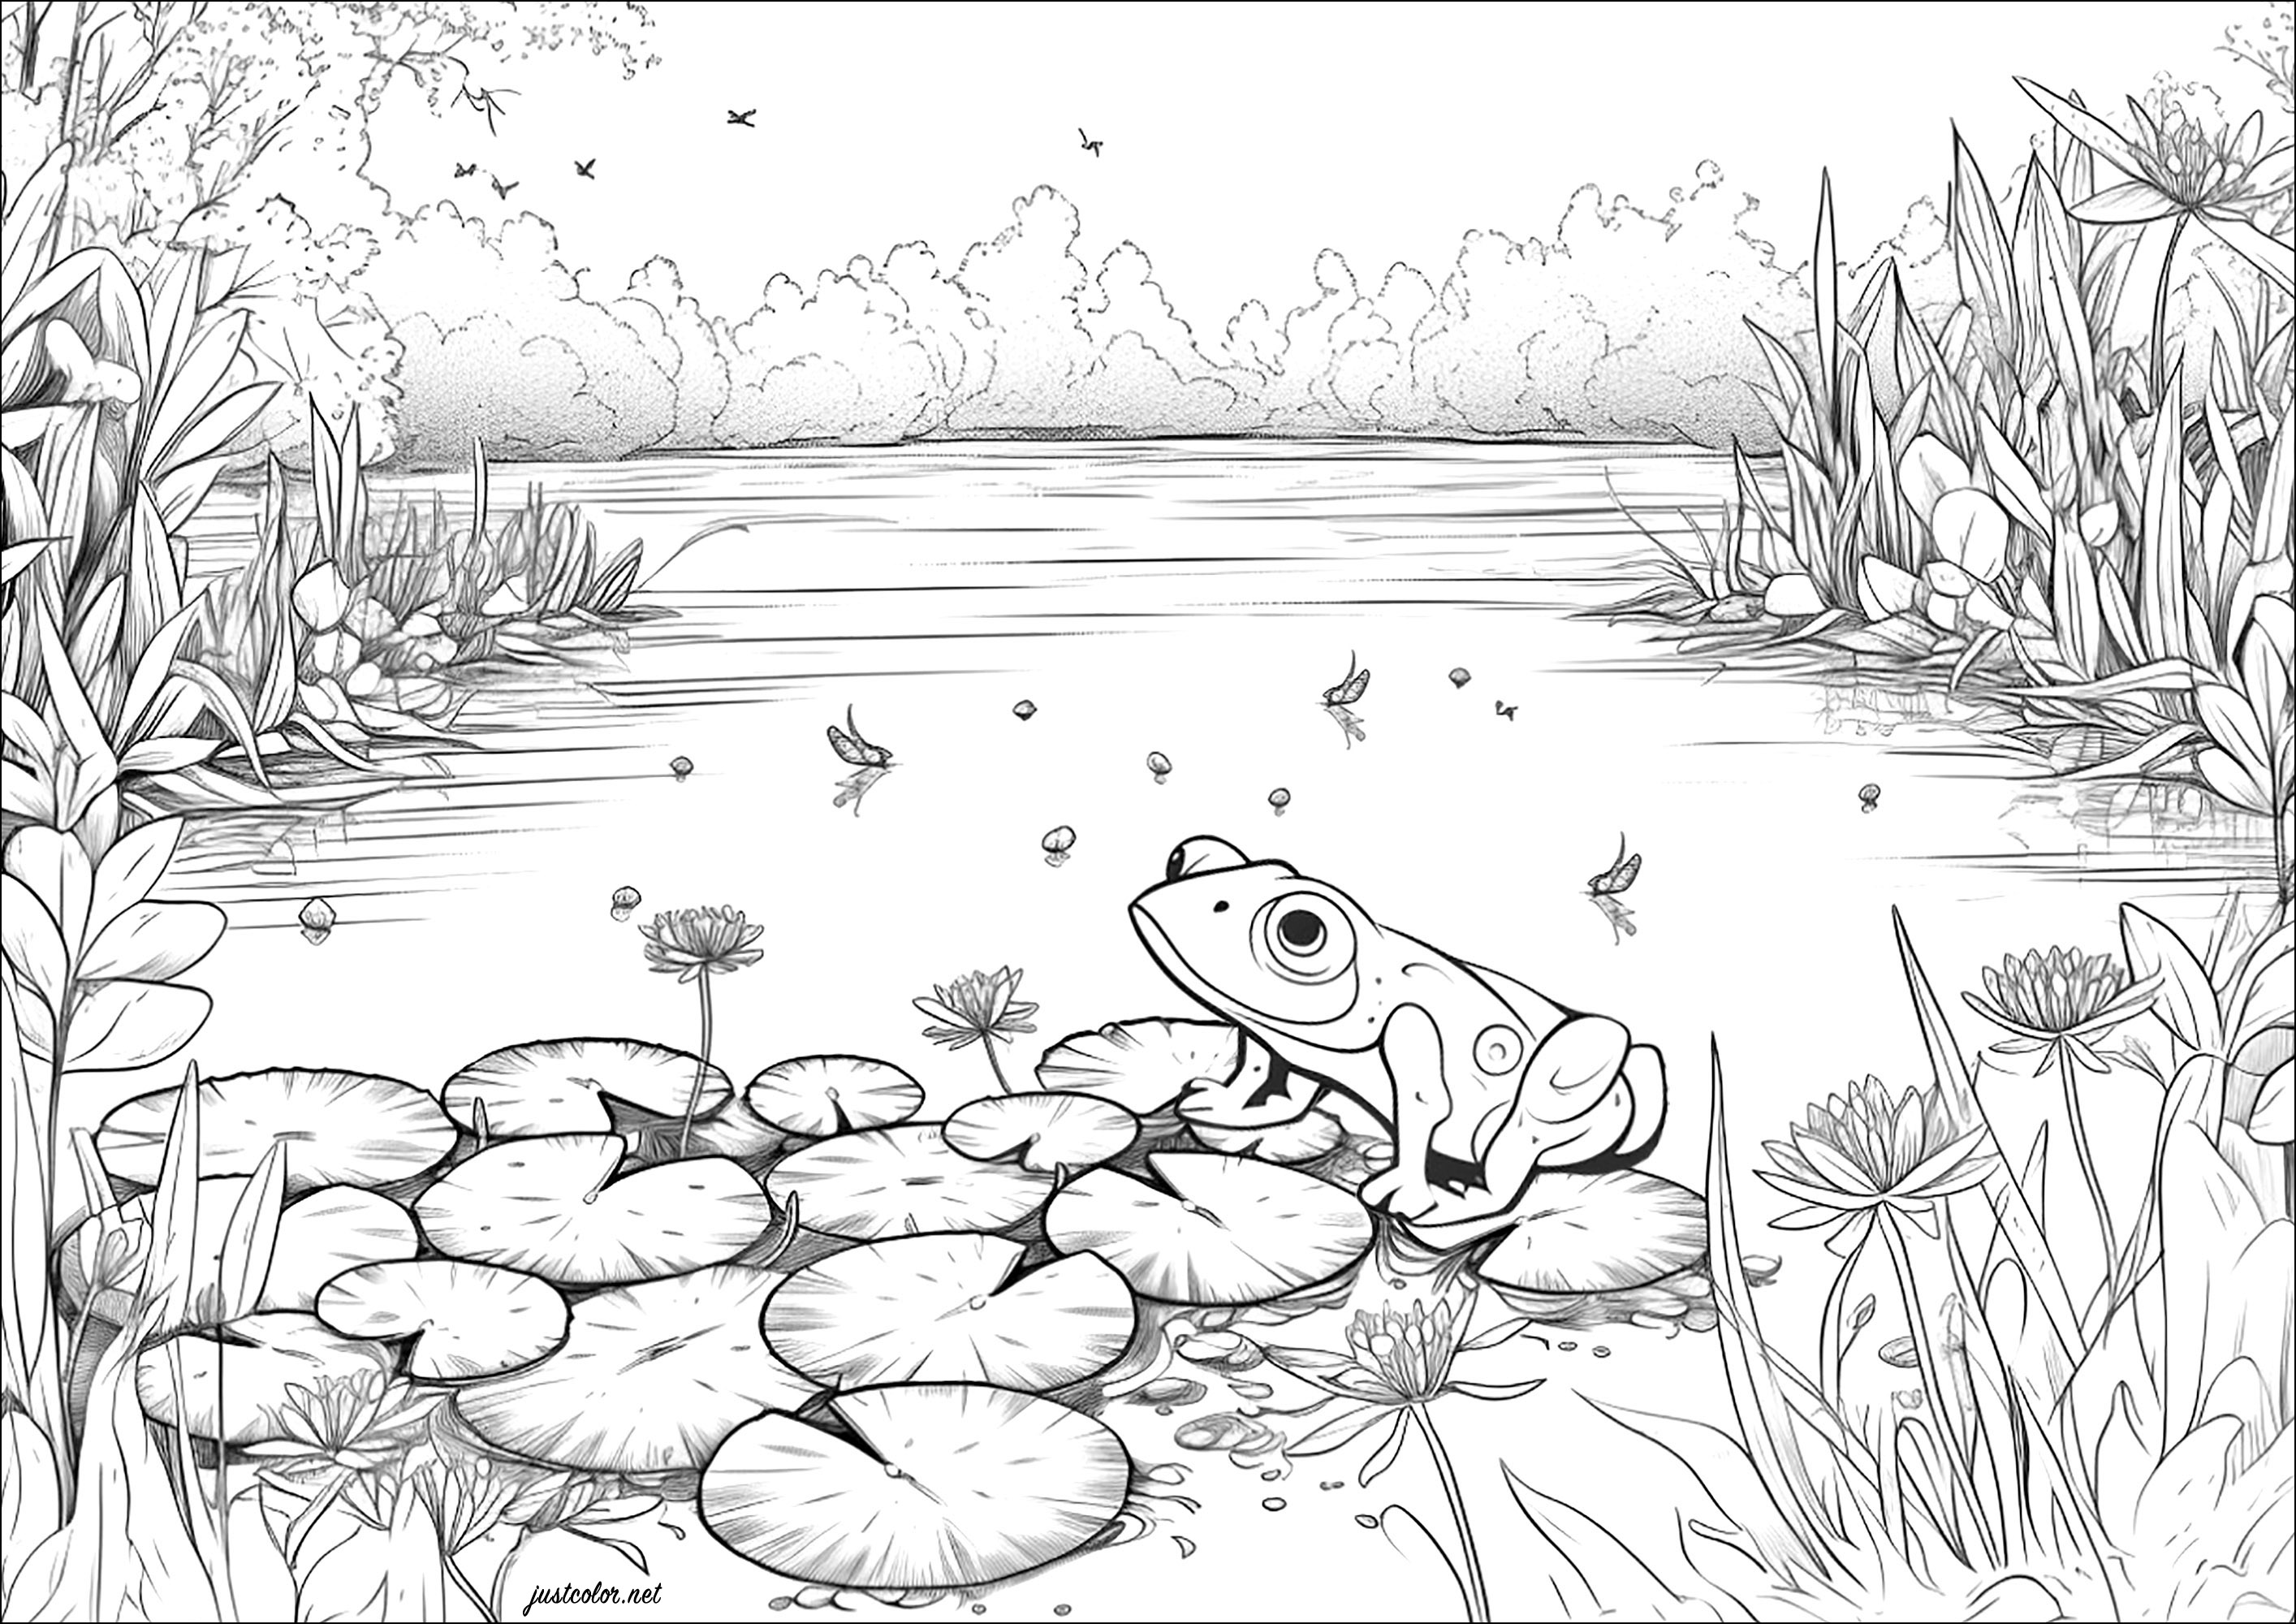 Frosch in einem schönen Teich. Färbe alle Pflanzendetails und die schönen Seerosen, auf denen sich der Frosch ausruht.